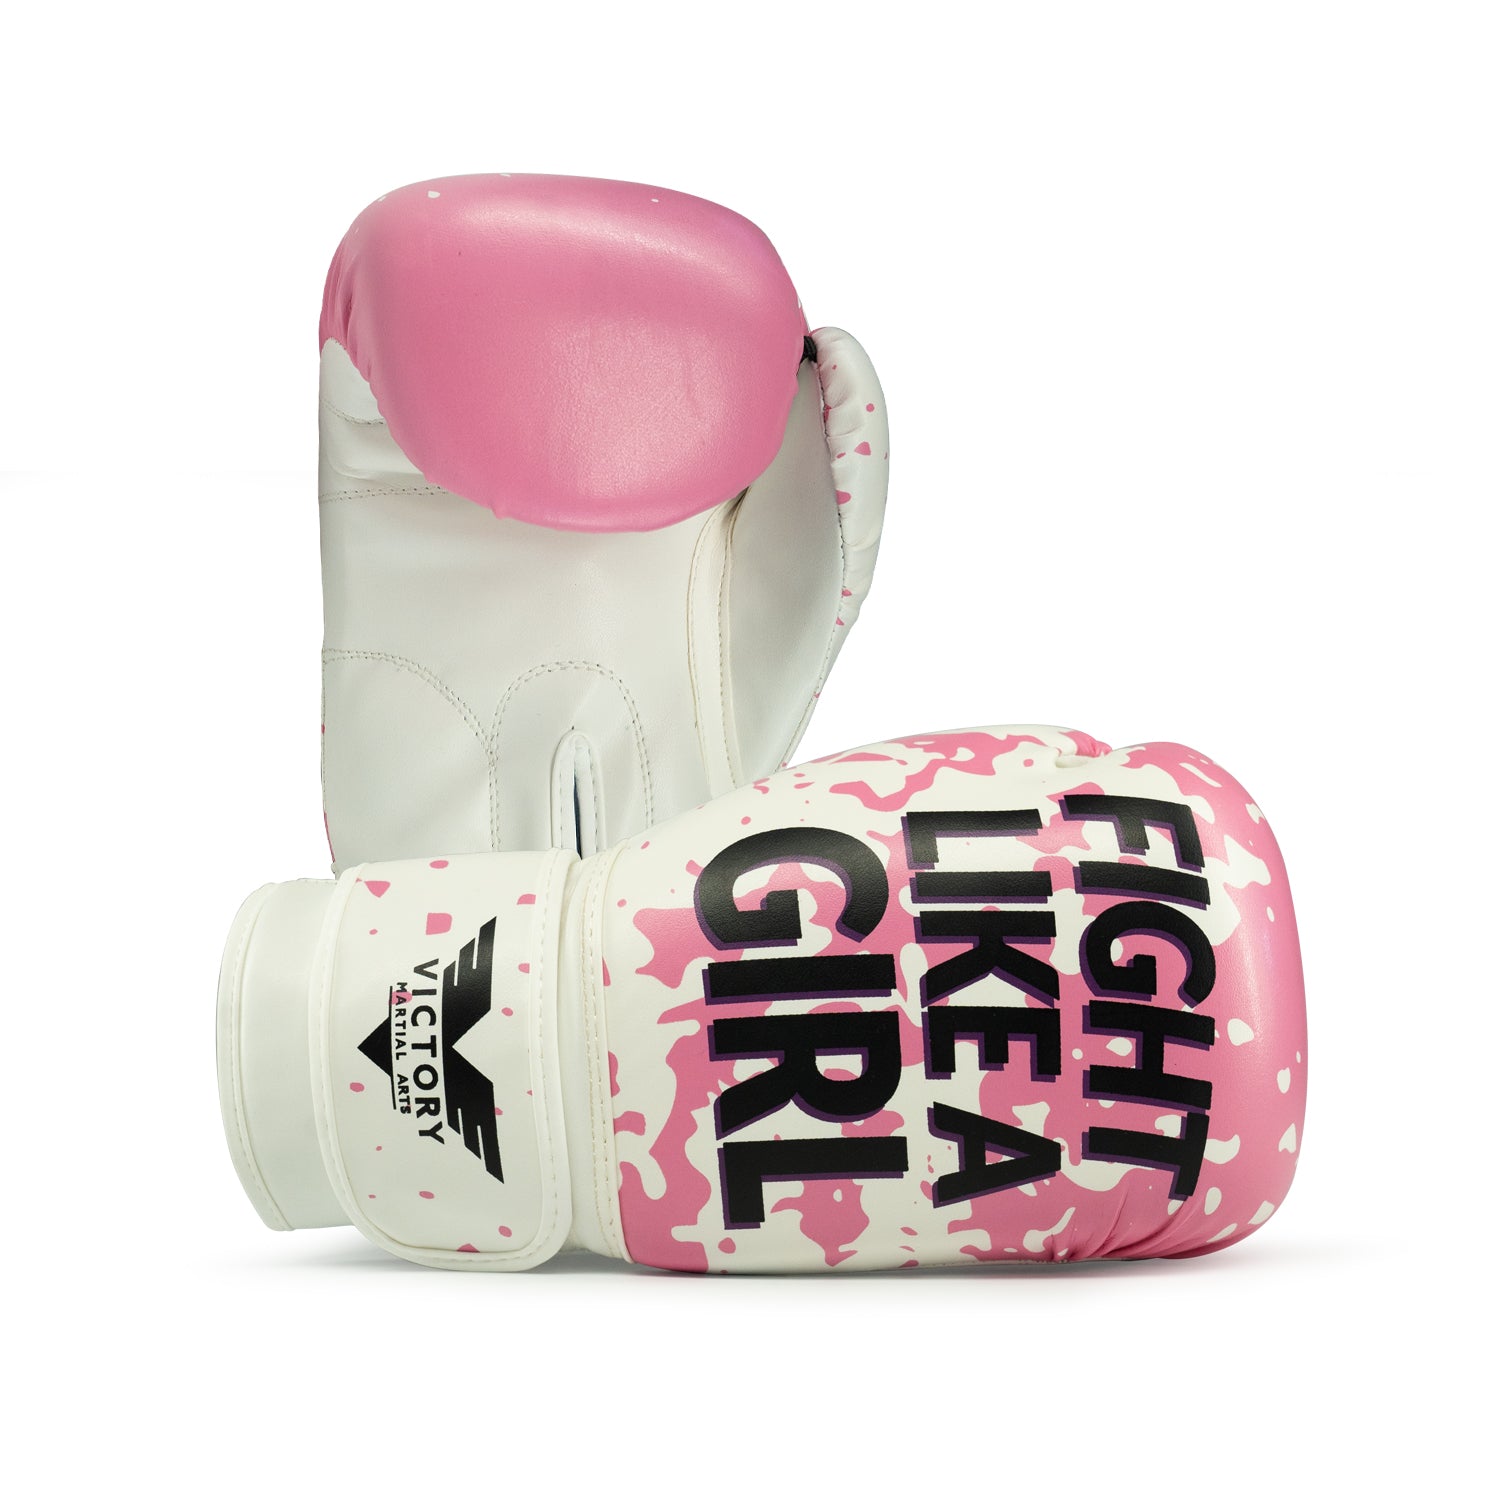 Women's Cardio Kickboxing Boxing Gloves/Punching Bag Gloves